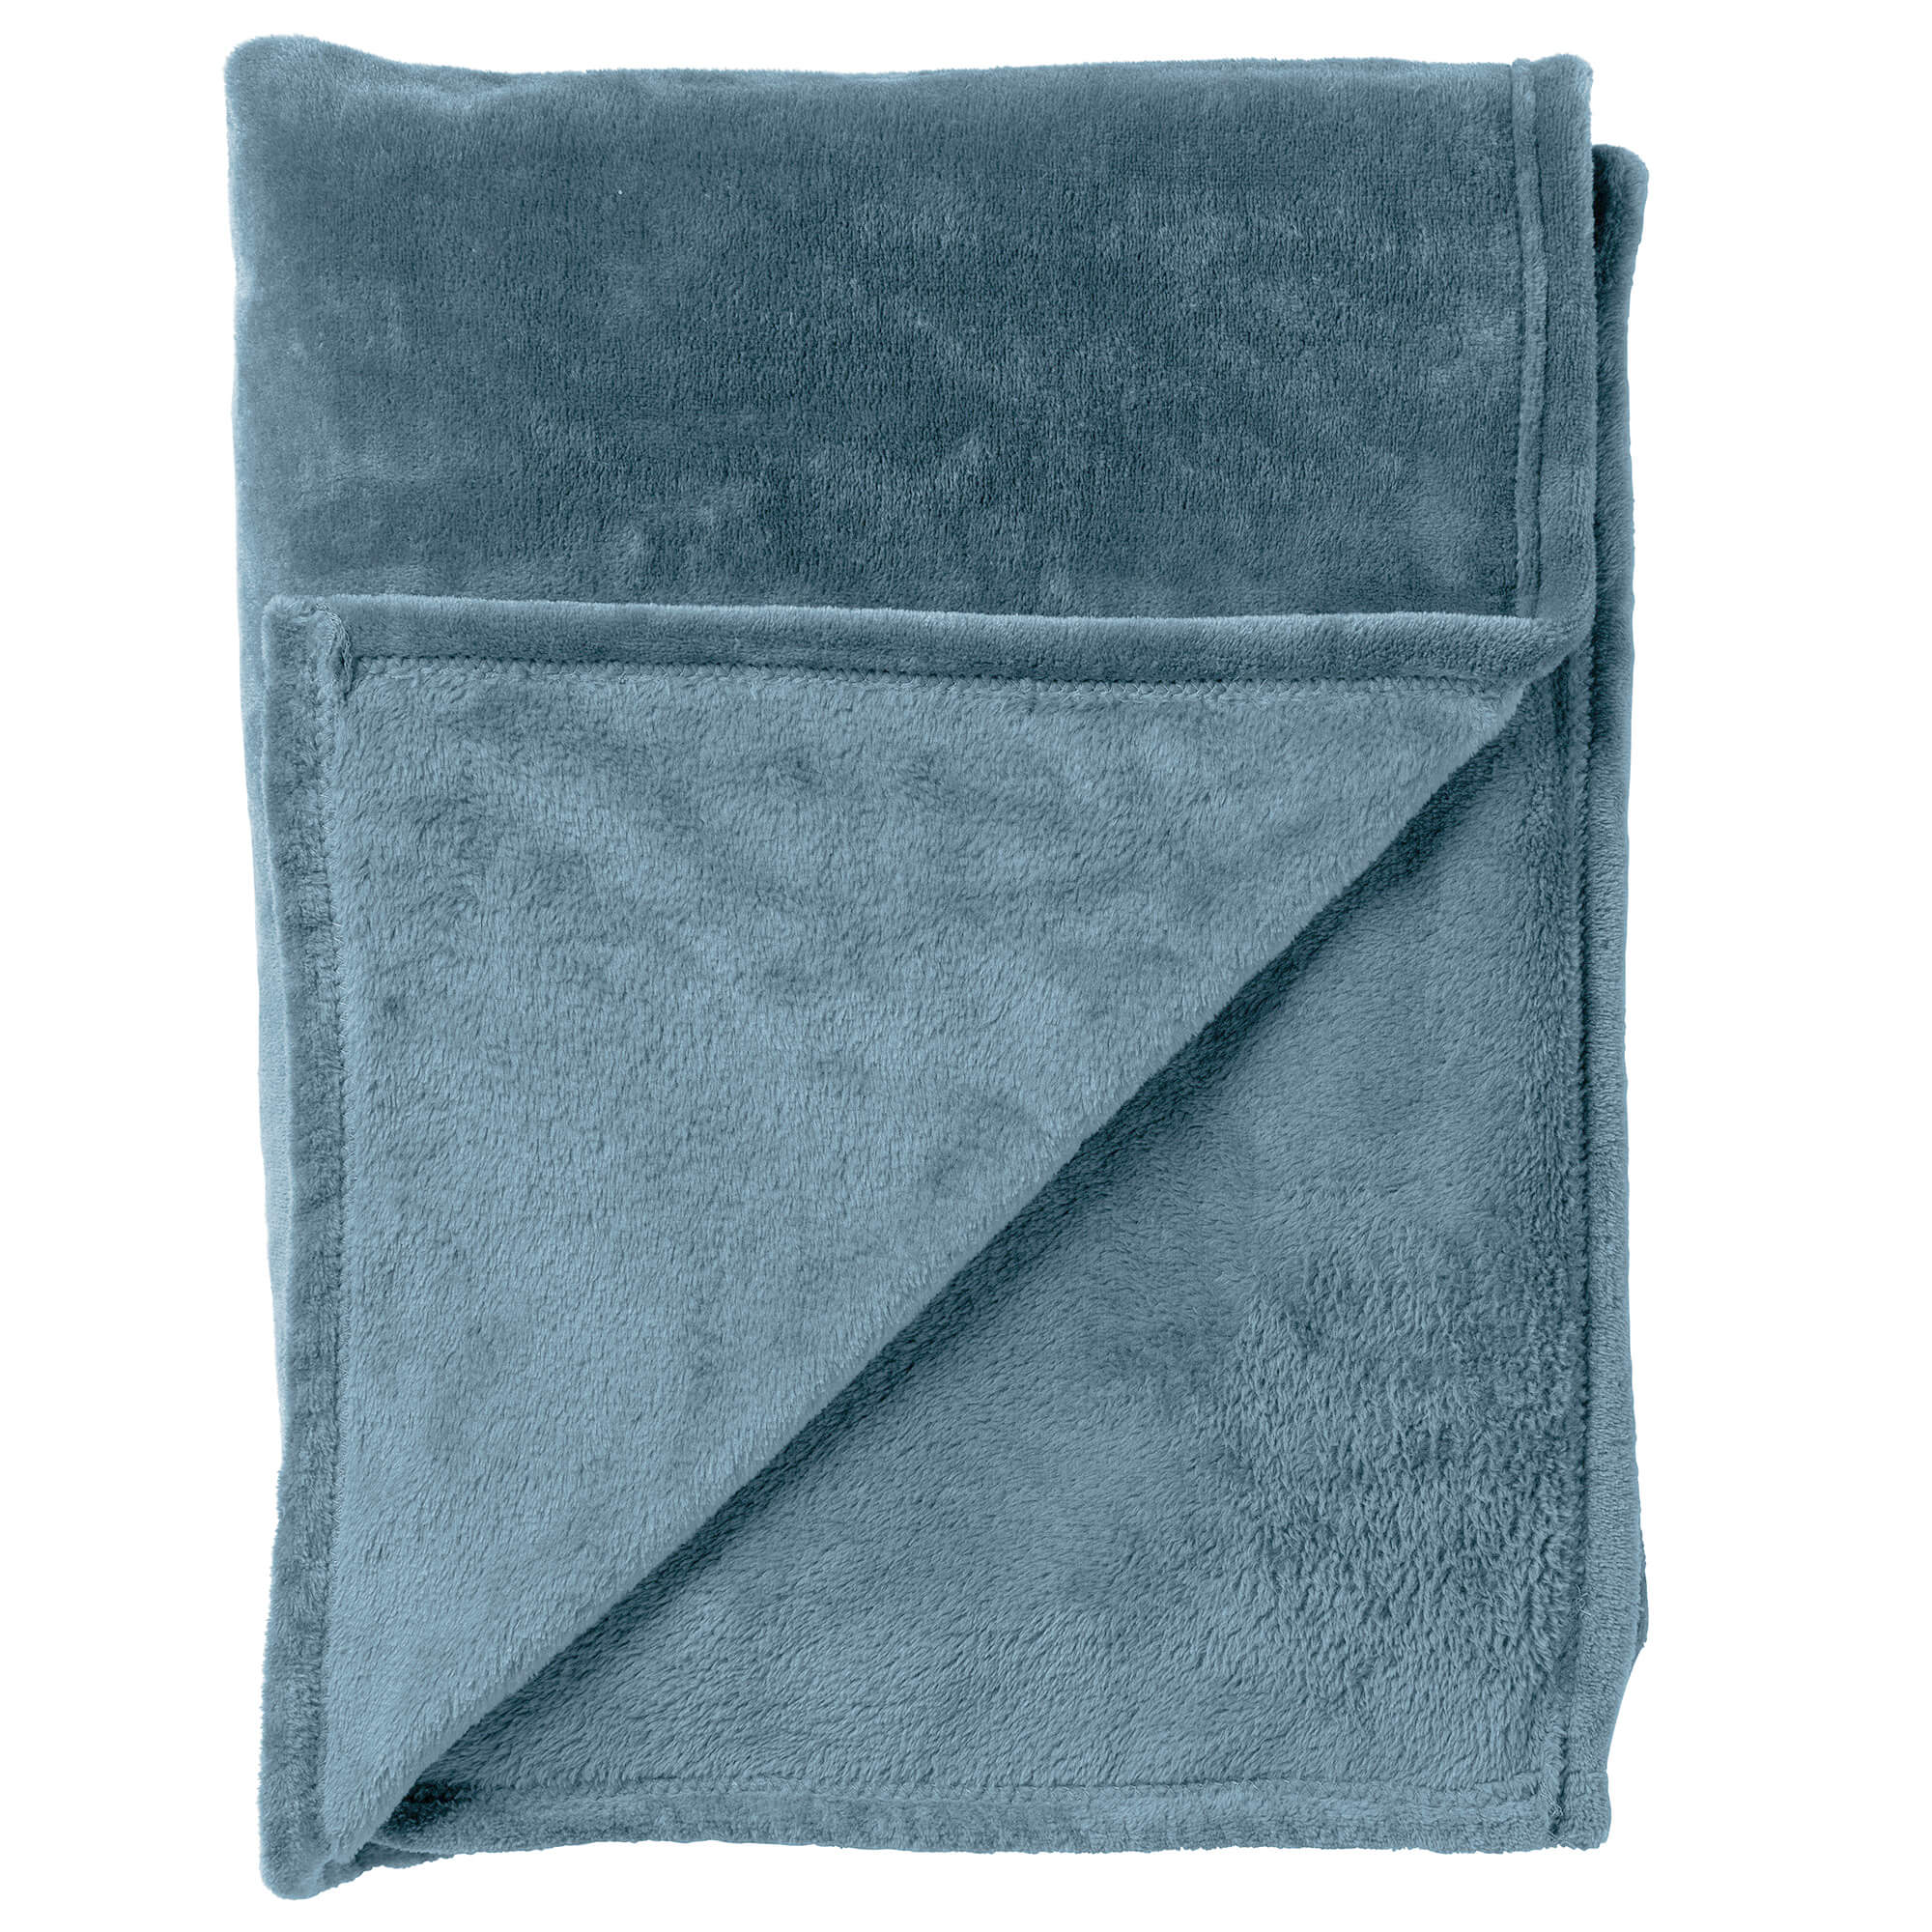 CHARLIE - Plaid 200x220 cm - extra grote fleece deken - effen kleur - Provincial Blue - blauw